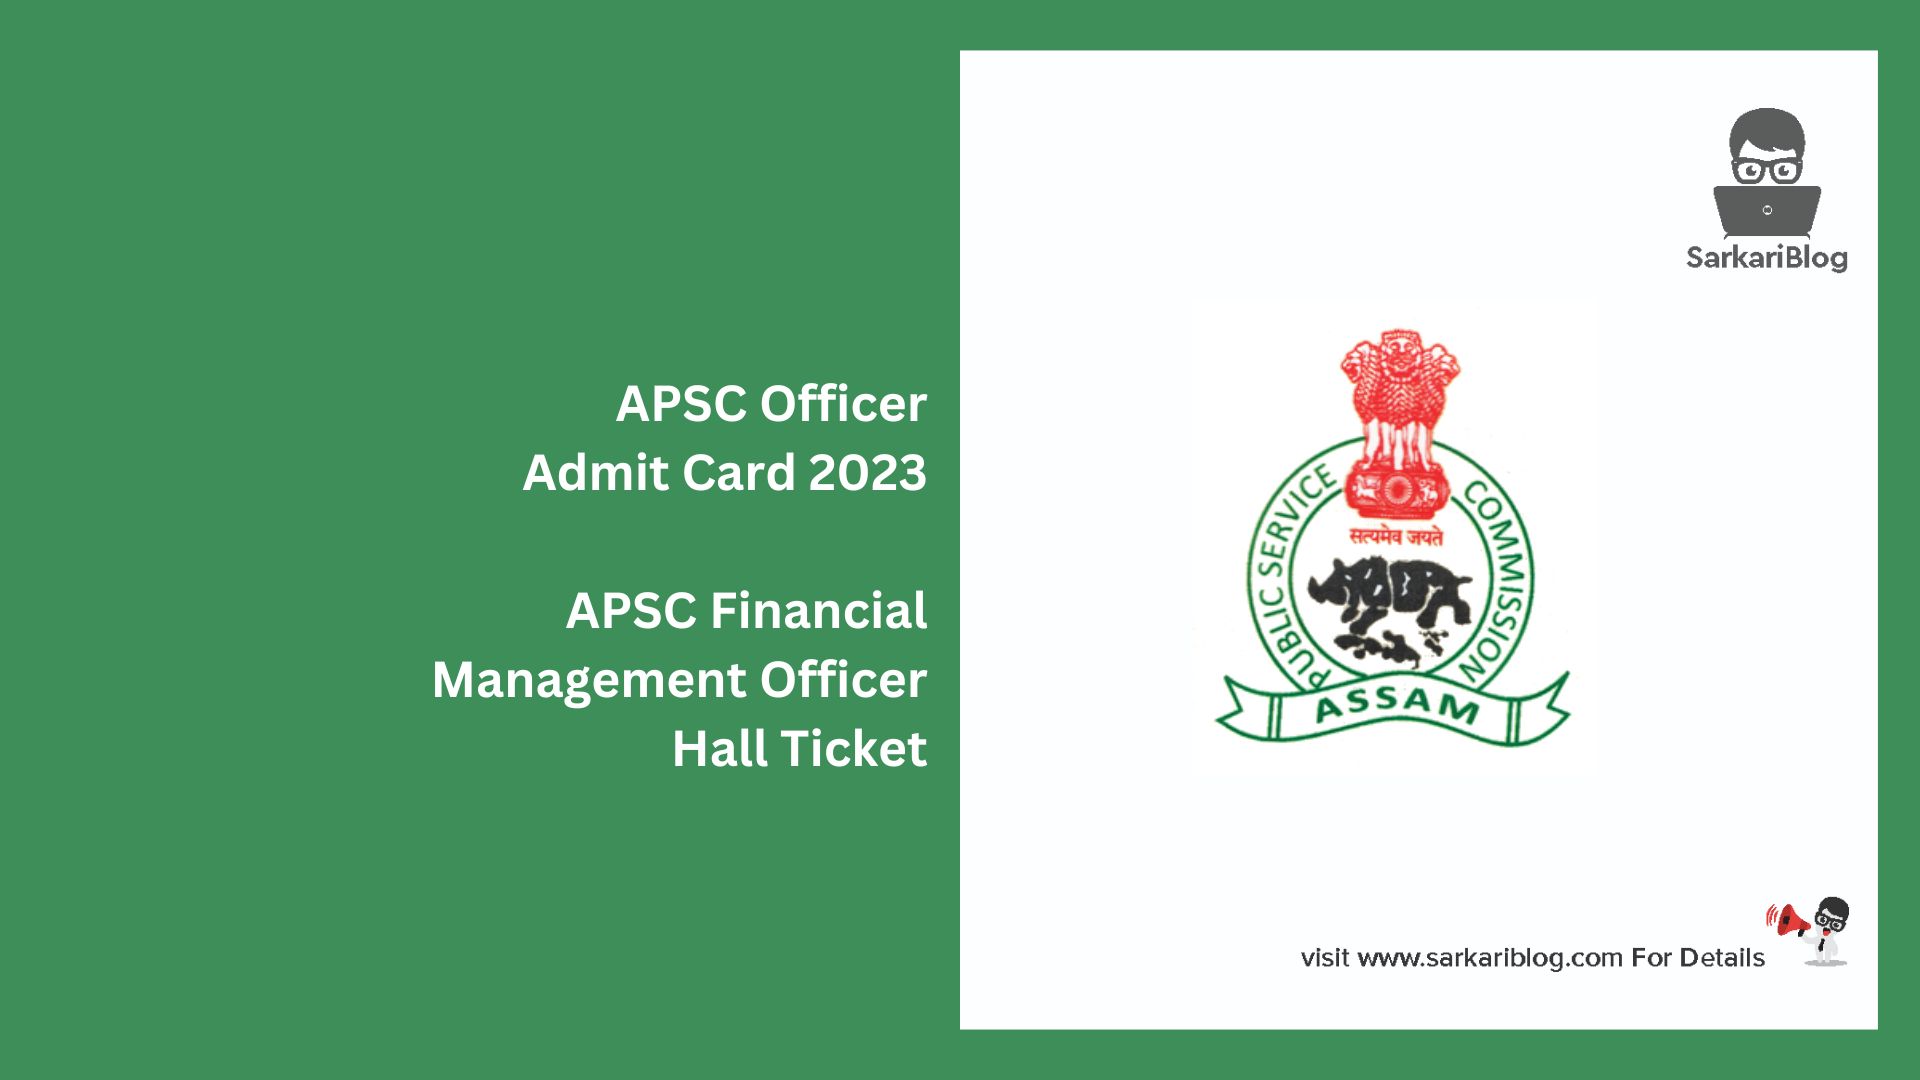 APSC Officer Admit Card 2023